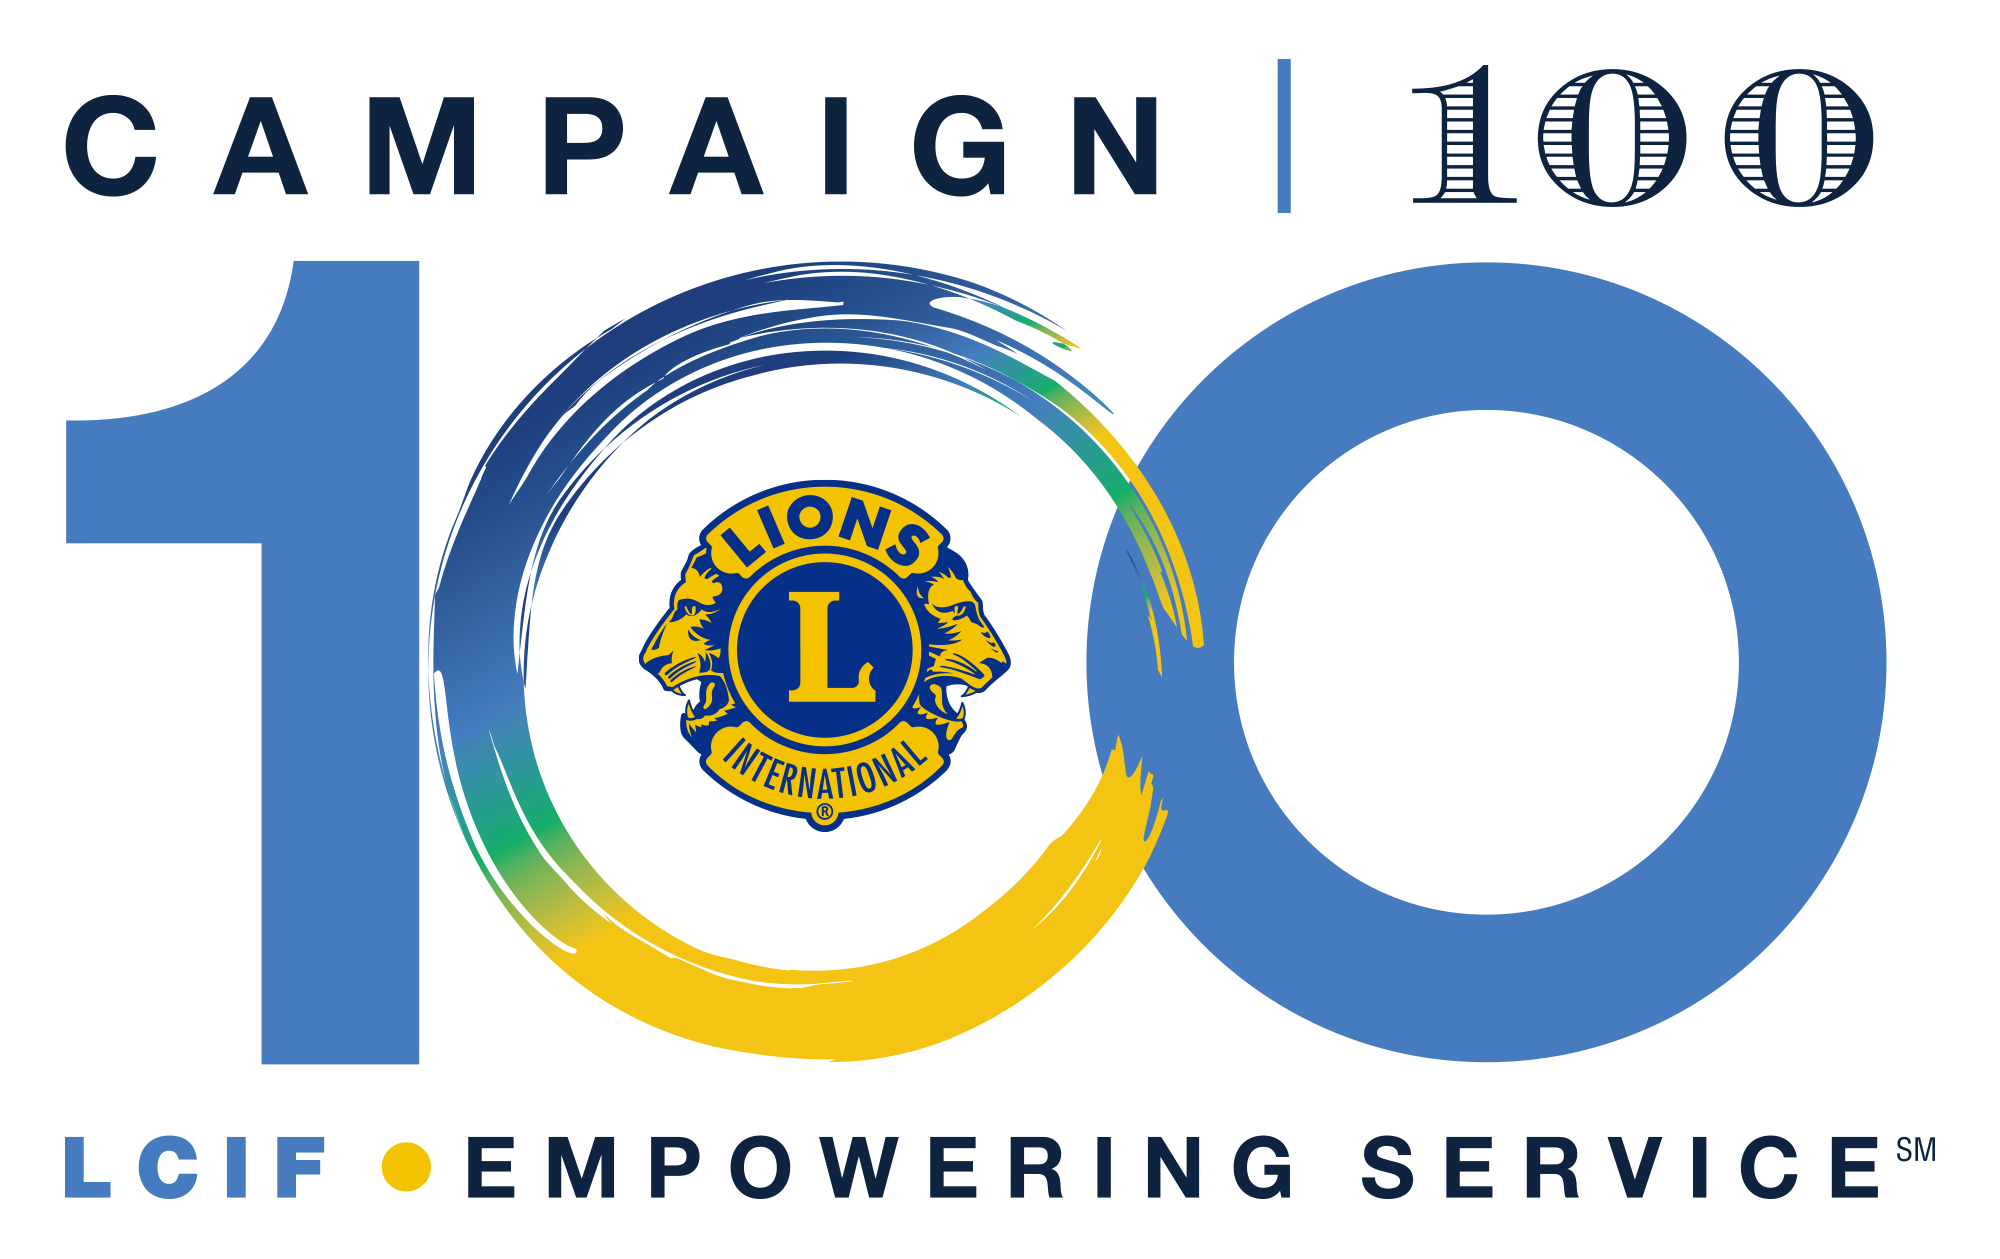 Campaign 100 logo